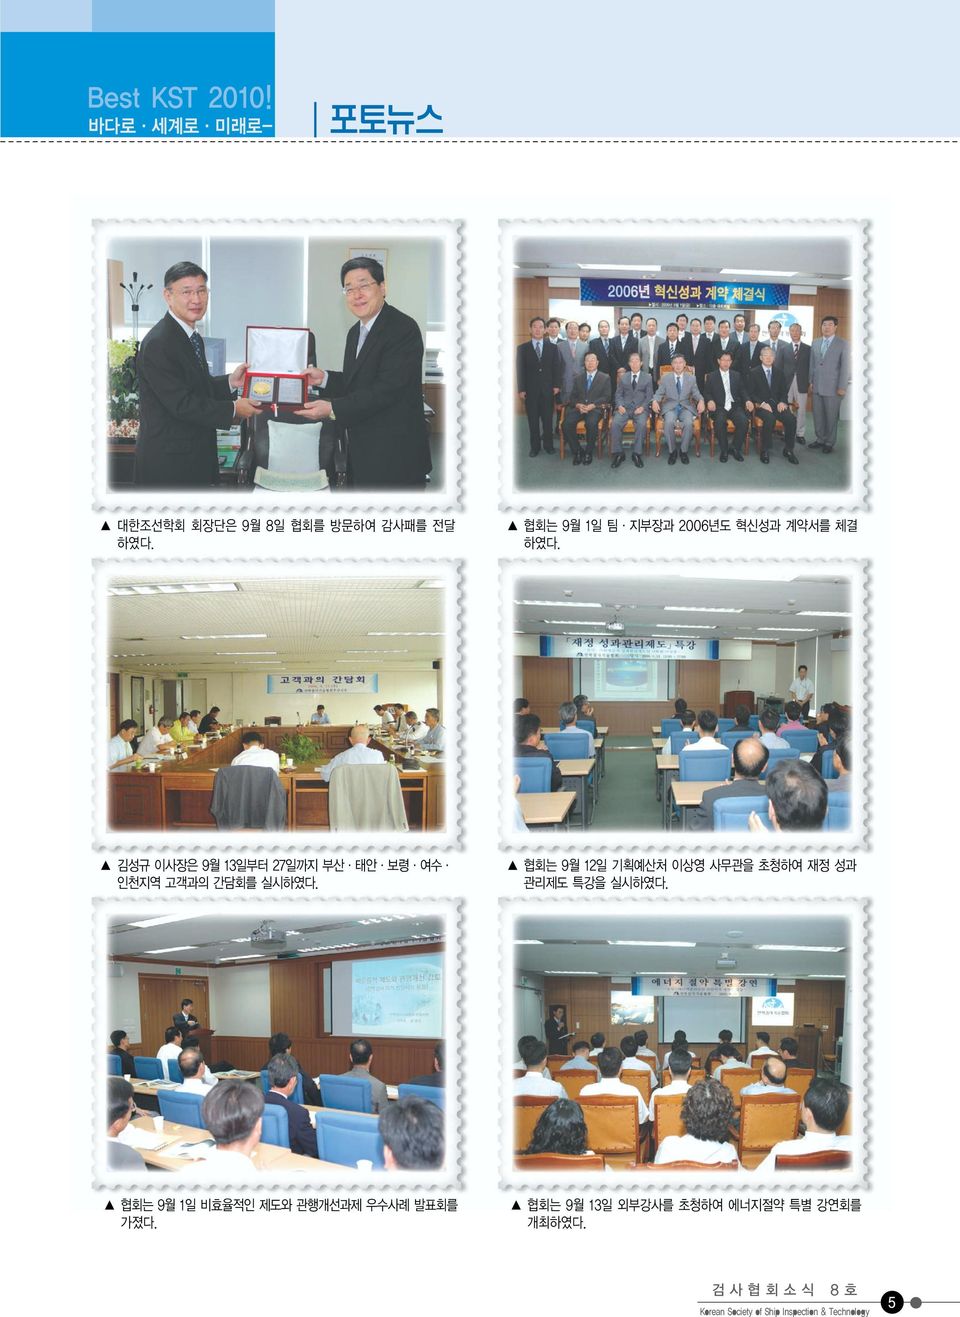 김성규 이사장은 9월 13일부터 27일까지 부산 태안 보령 여수 인천지역 고객과의 간담회를 실시하였다.